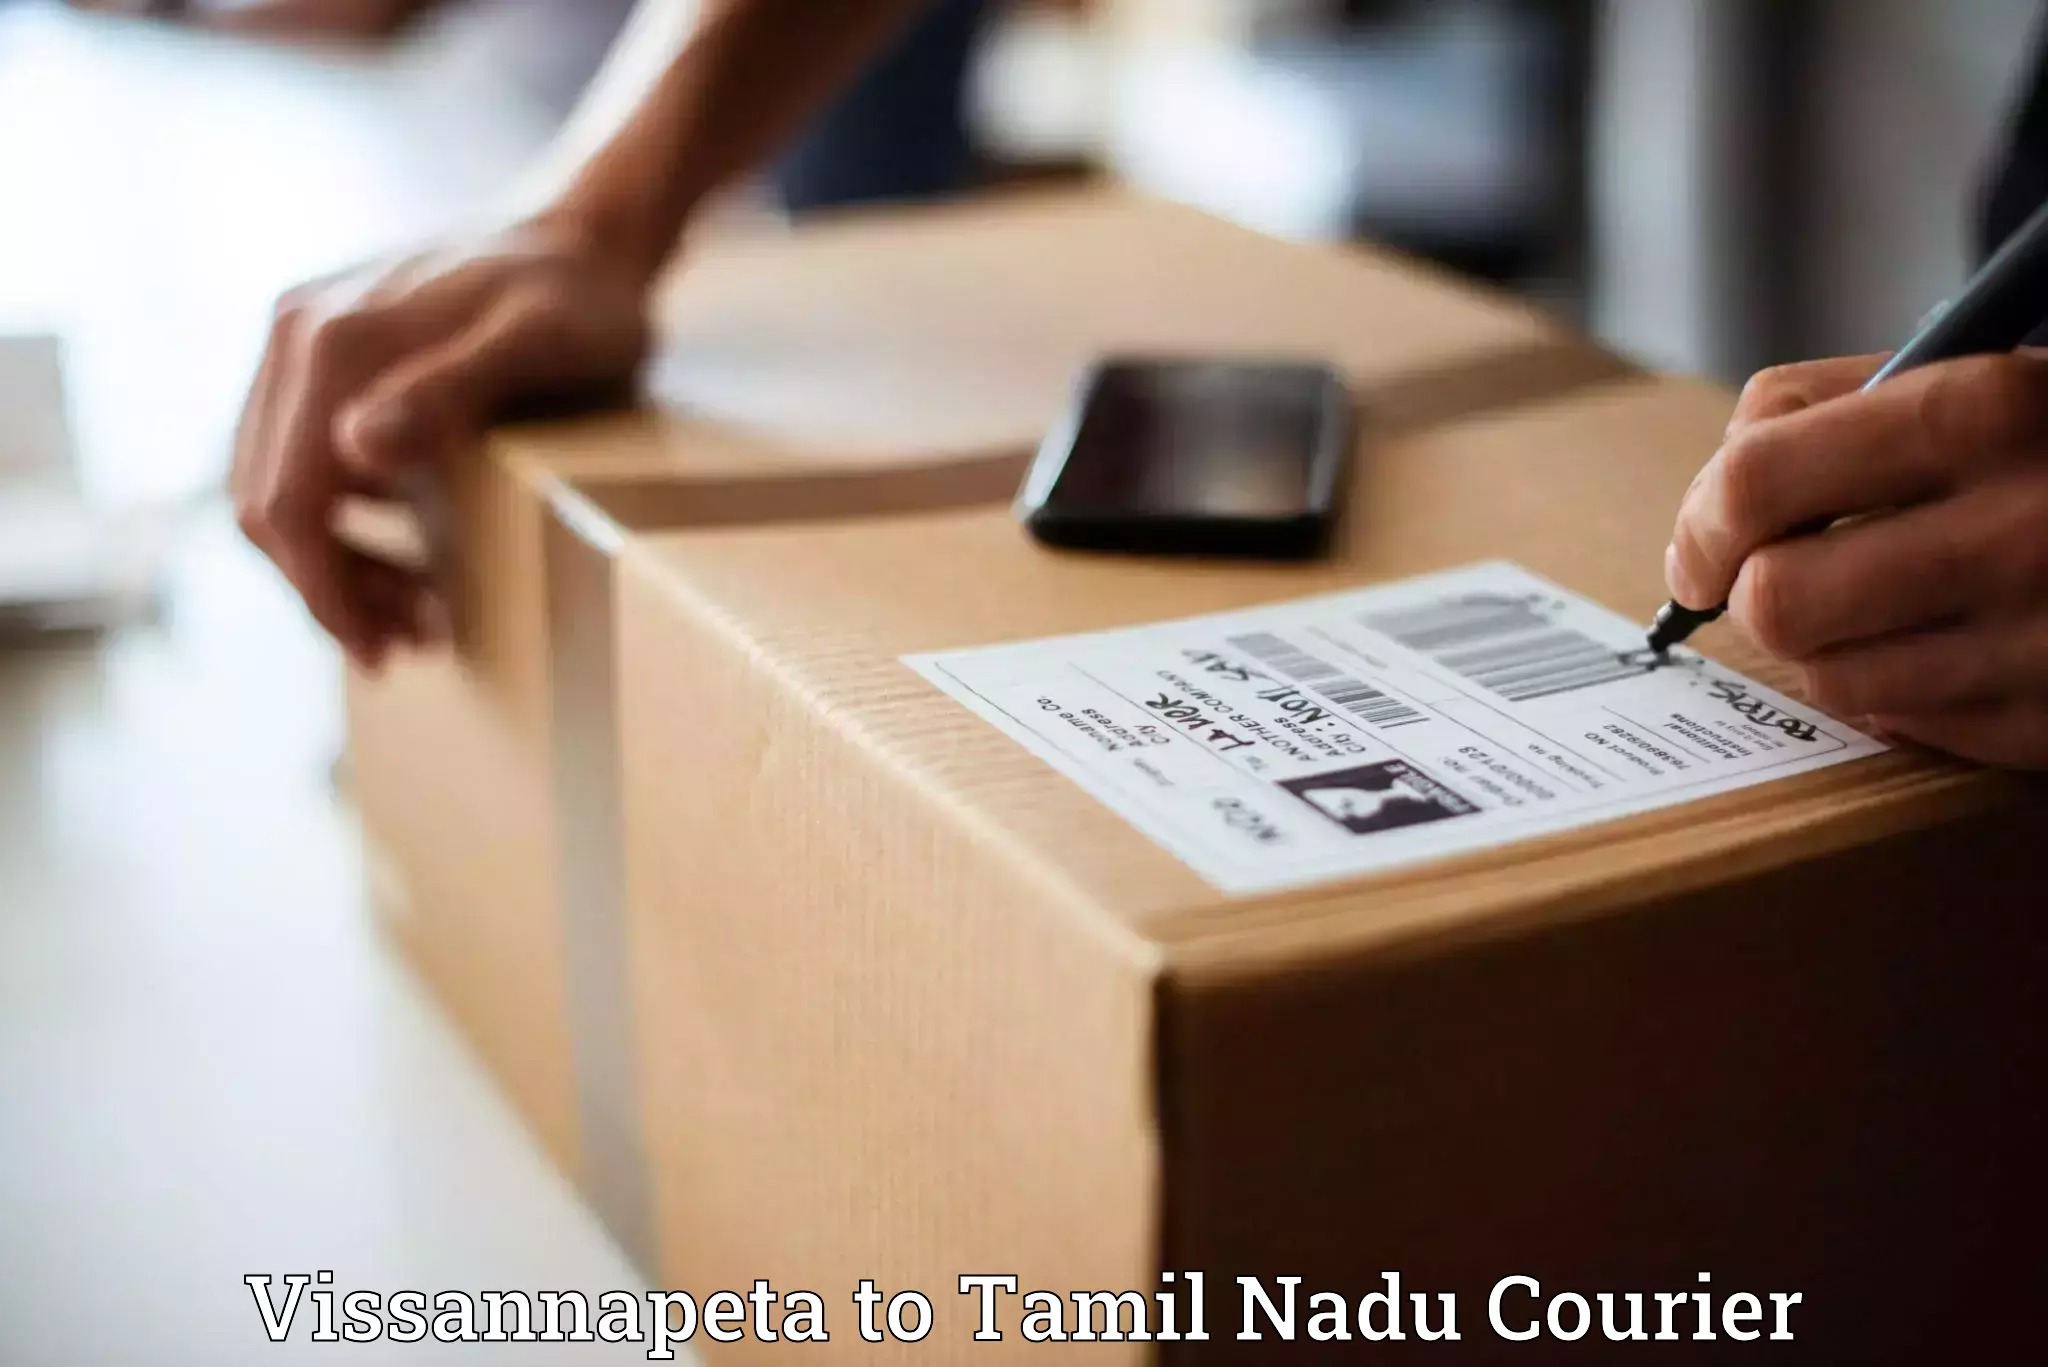 E-commerce shipping partnerships Vissannapeta to Vilathikulam